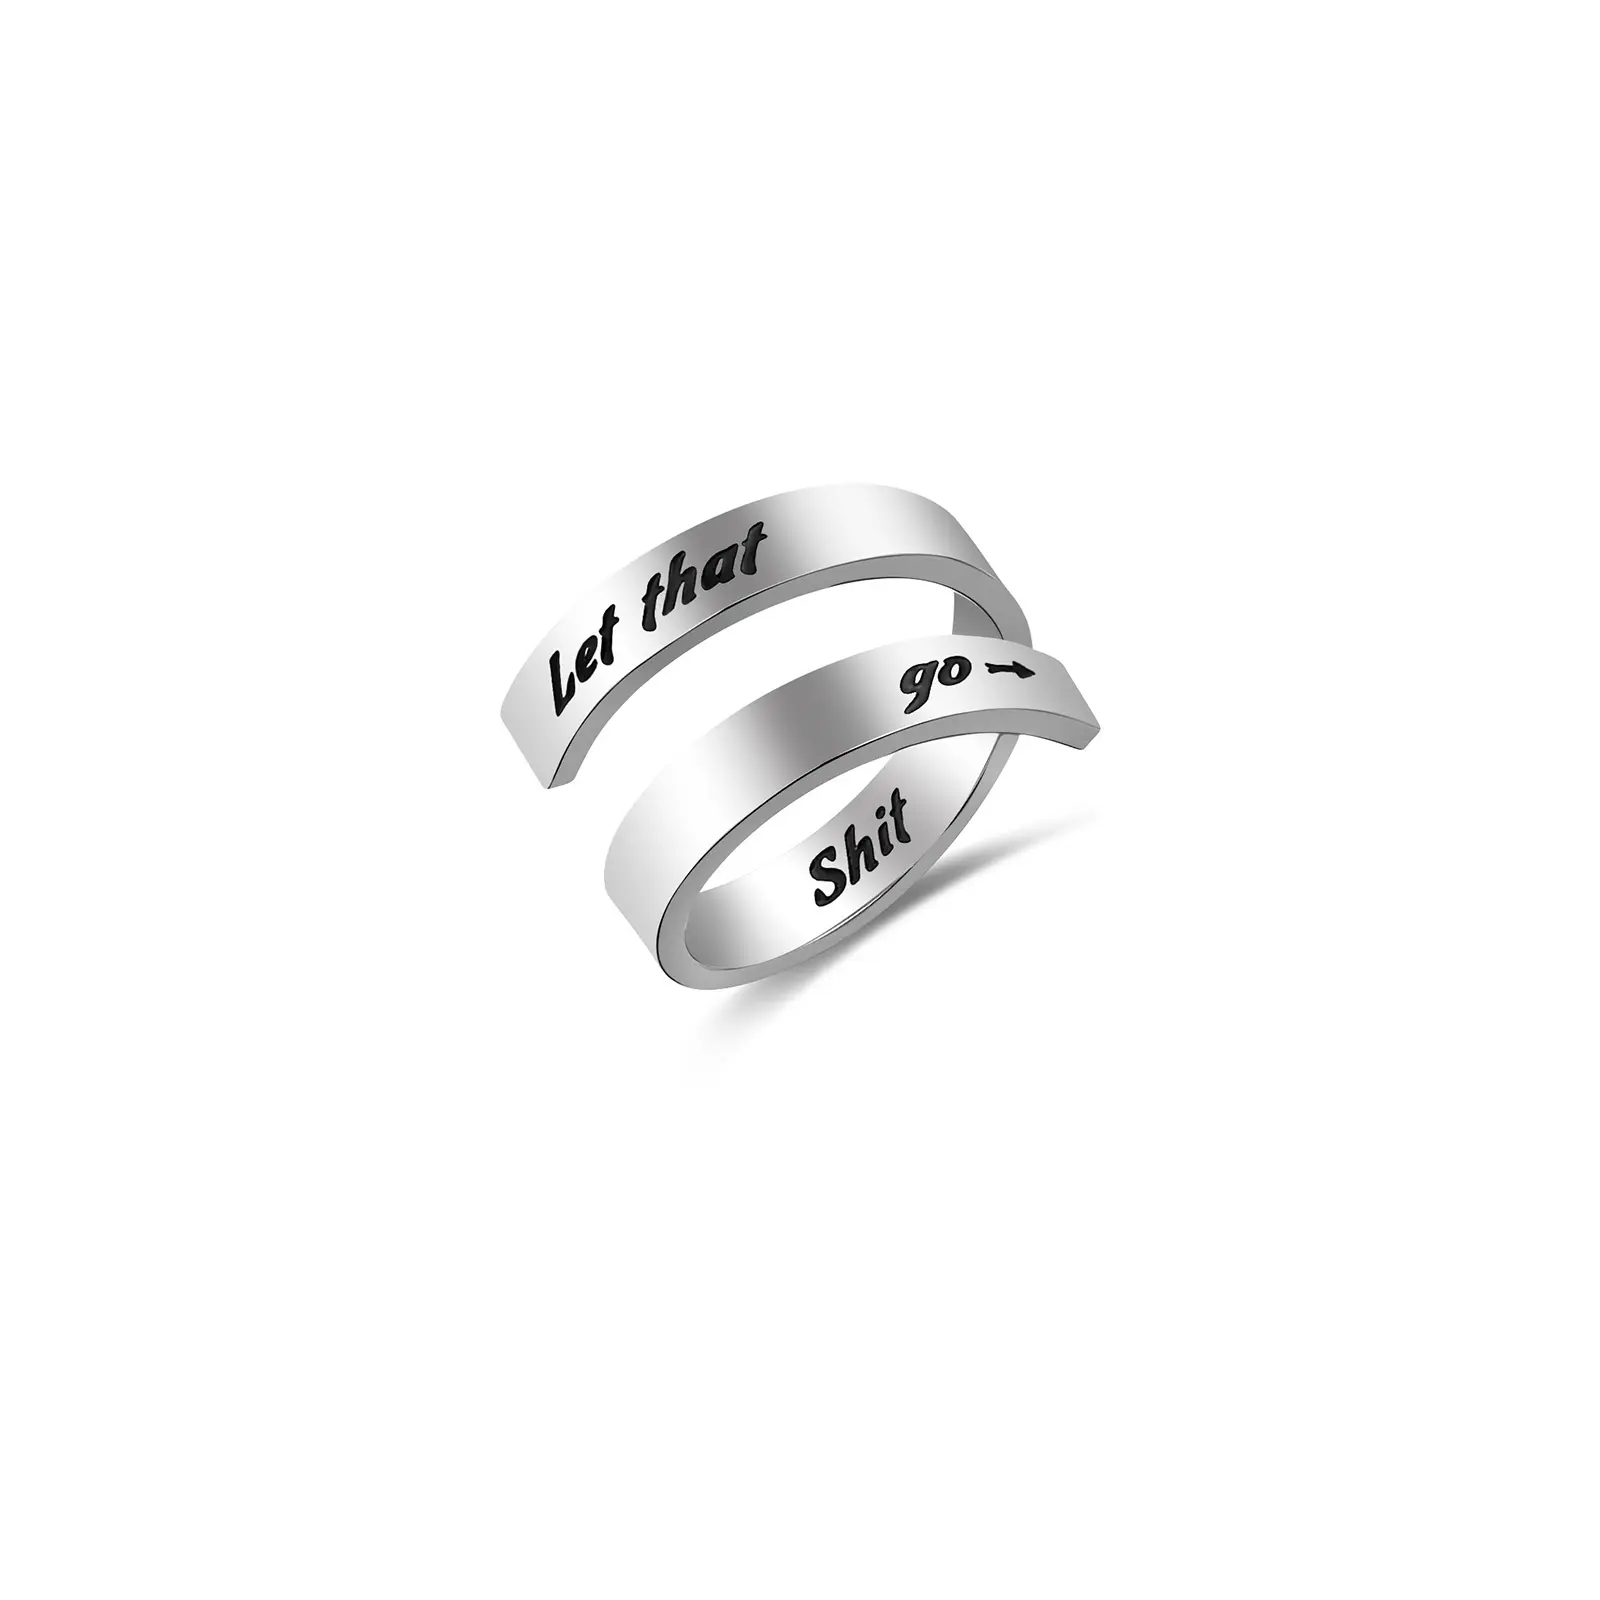 ขายร้อนแหวนคู่กับตัวอักษรให้ที่อึไป,แหวนเหล็กสำหรับผู้ชายและผู้หญิง,เครื่องประดับแฟชั่น